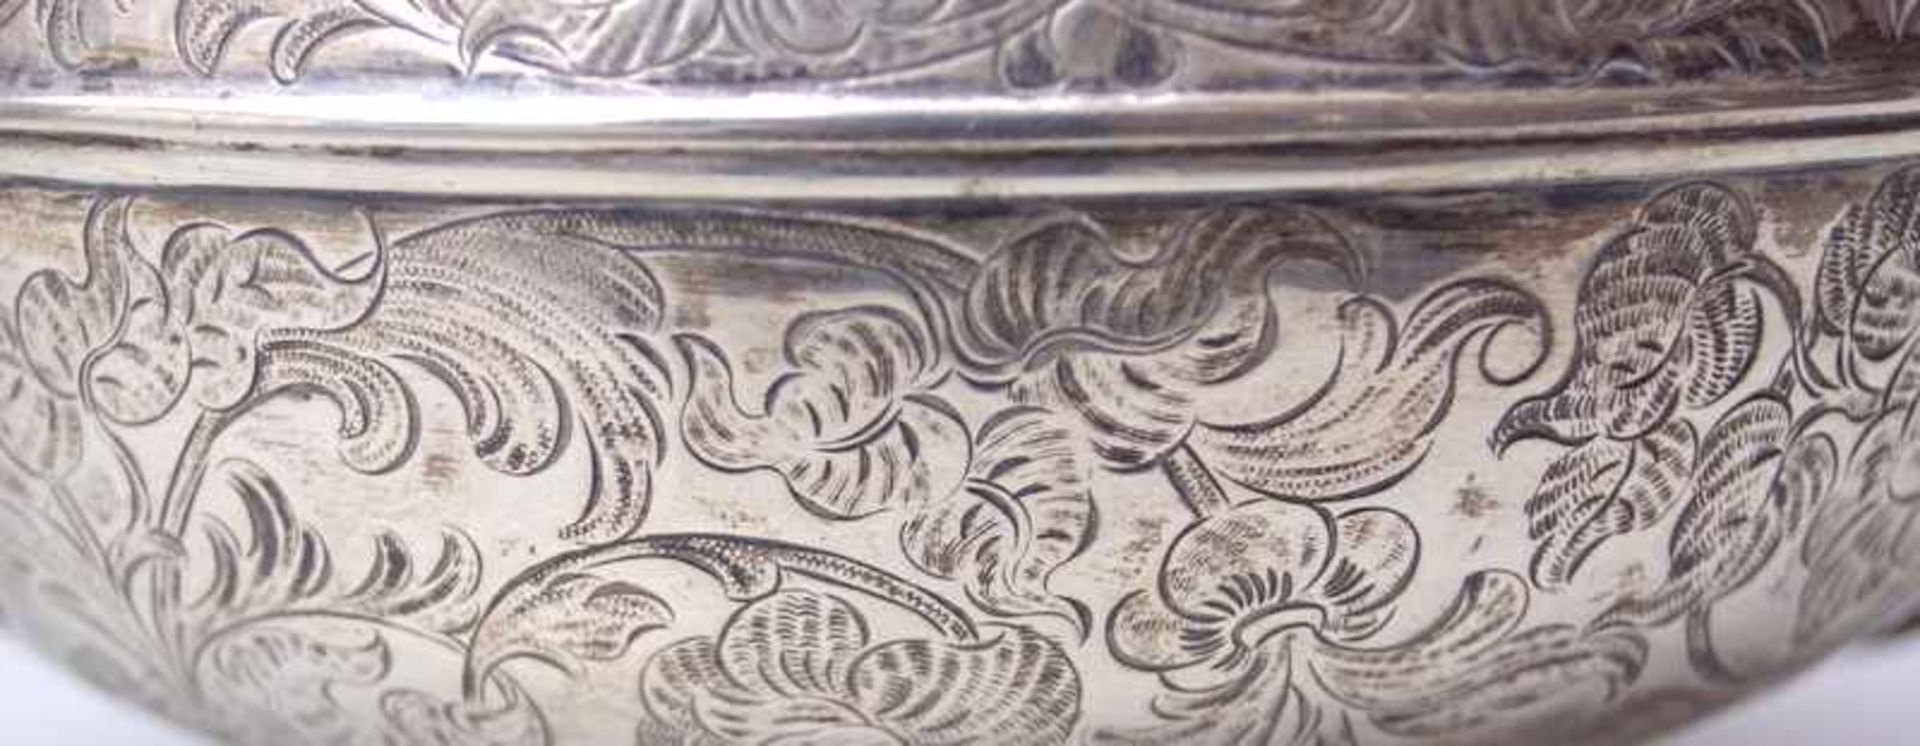 Teekanne, Wien, wohl 2. Hälfte 19.Jhd.bauchige Form, getrieben, ziselierte Ornamentik in Form von - Image 4 of 4